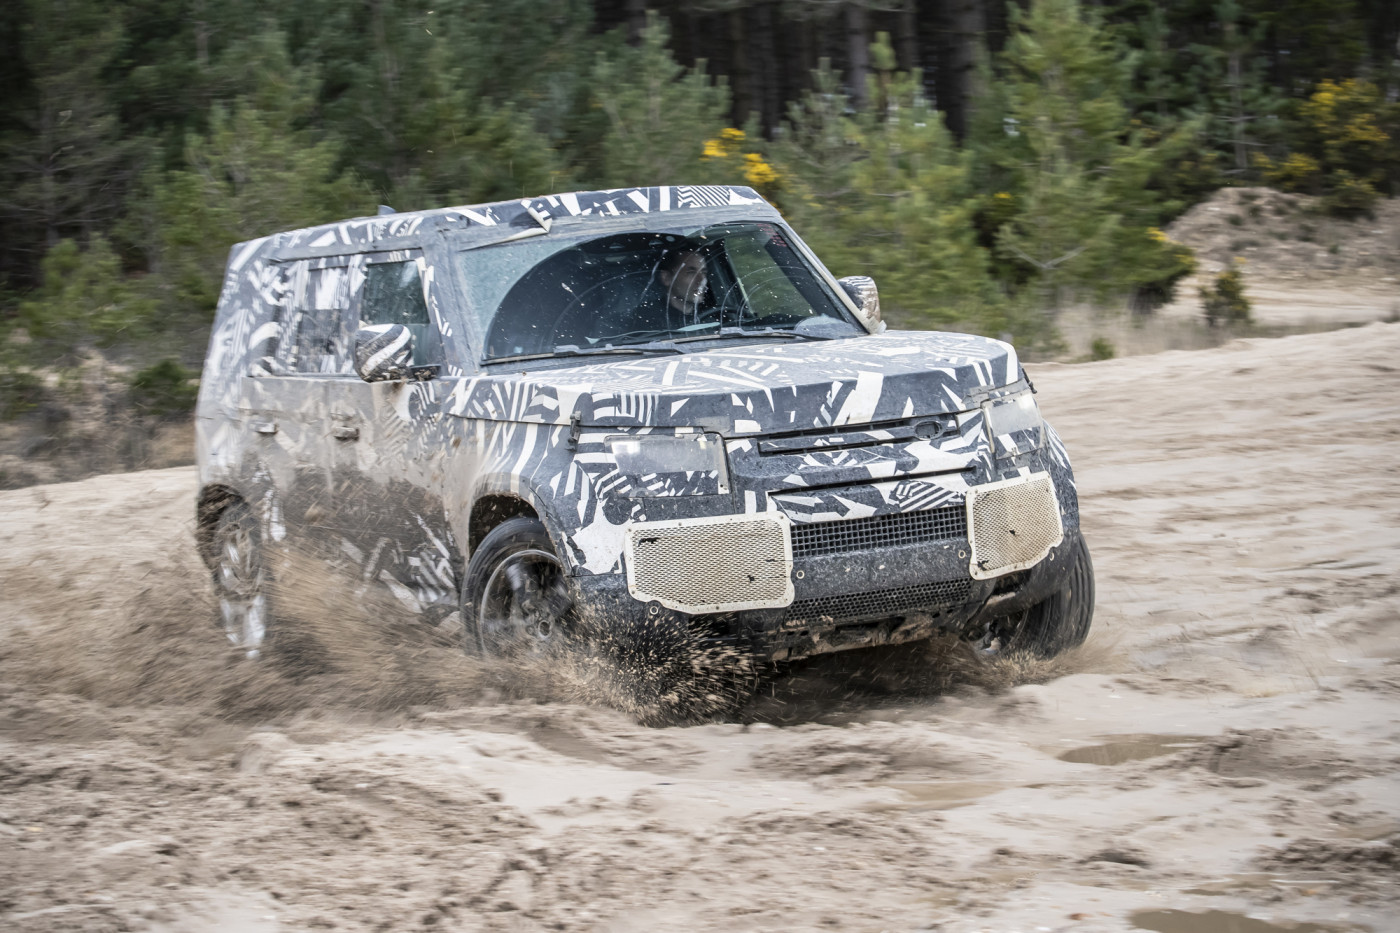 Oficial: Land Rover nos enseña el nuevo Defender en su hábitat natural, lo veremos este año